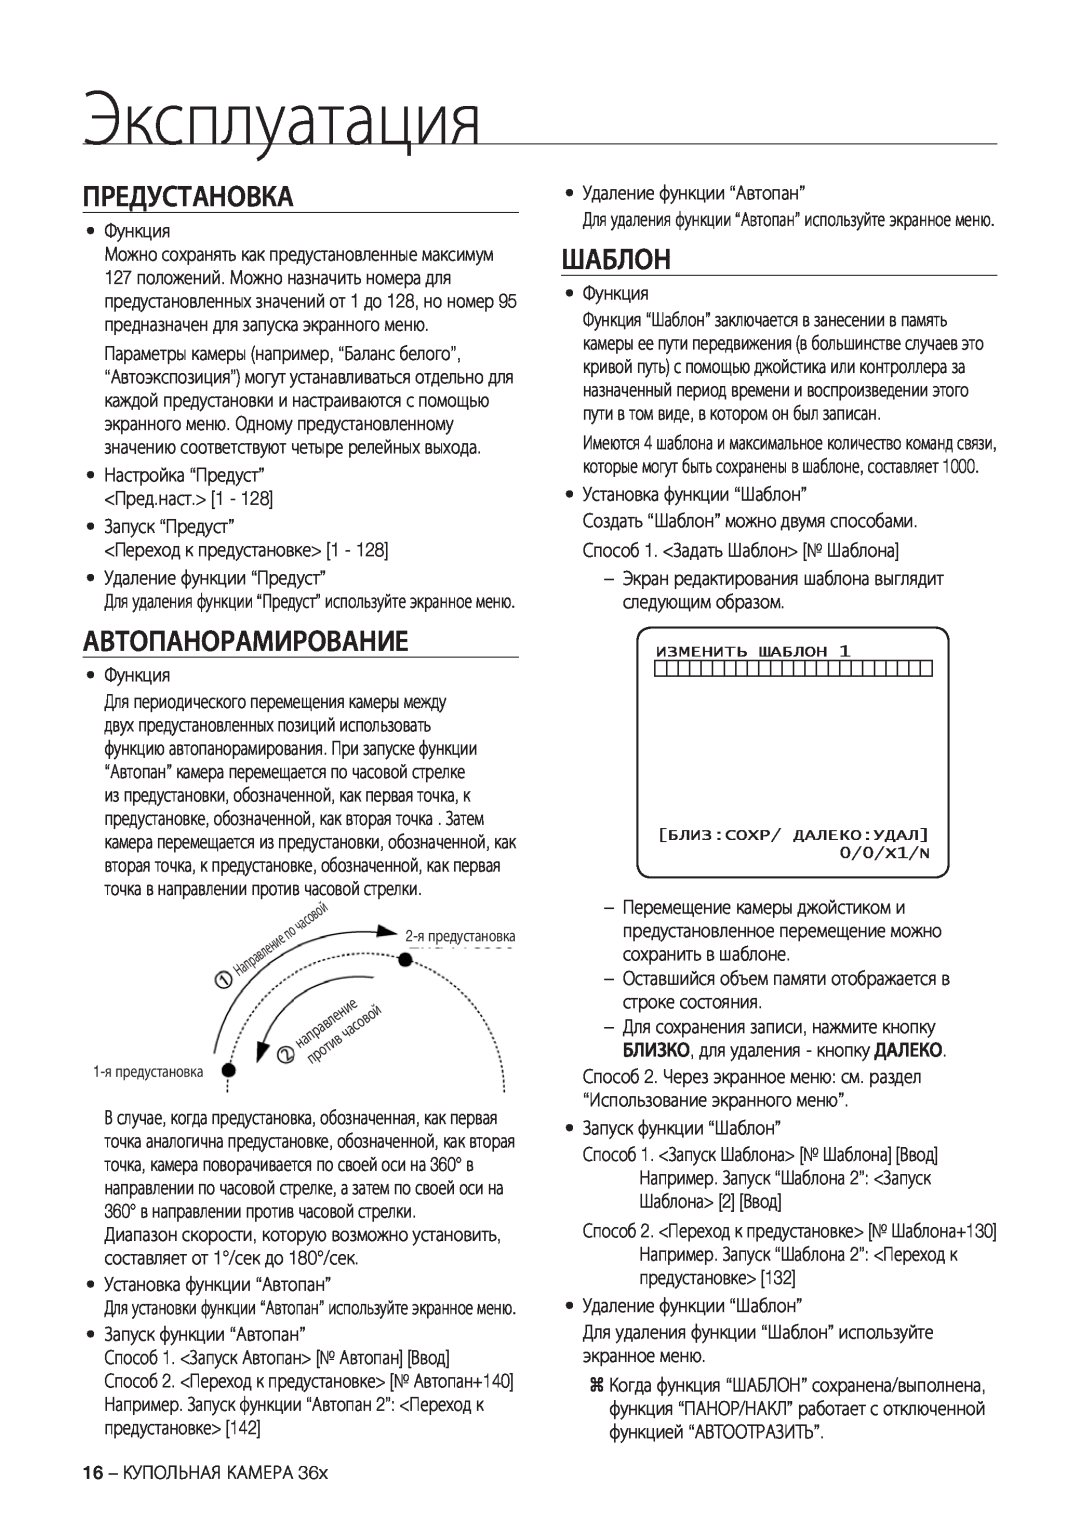 Samsung SCC-C7478P manual Предустановка, Автопанорамирование, Шаблон, Эксплуатация 